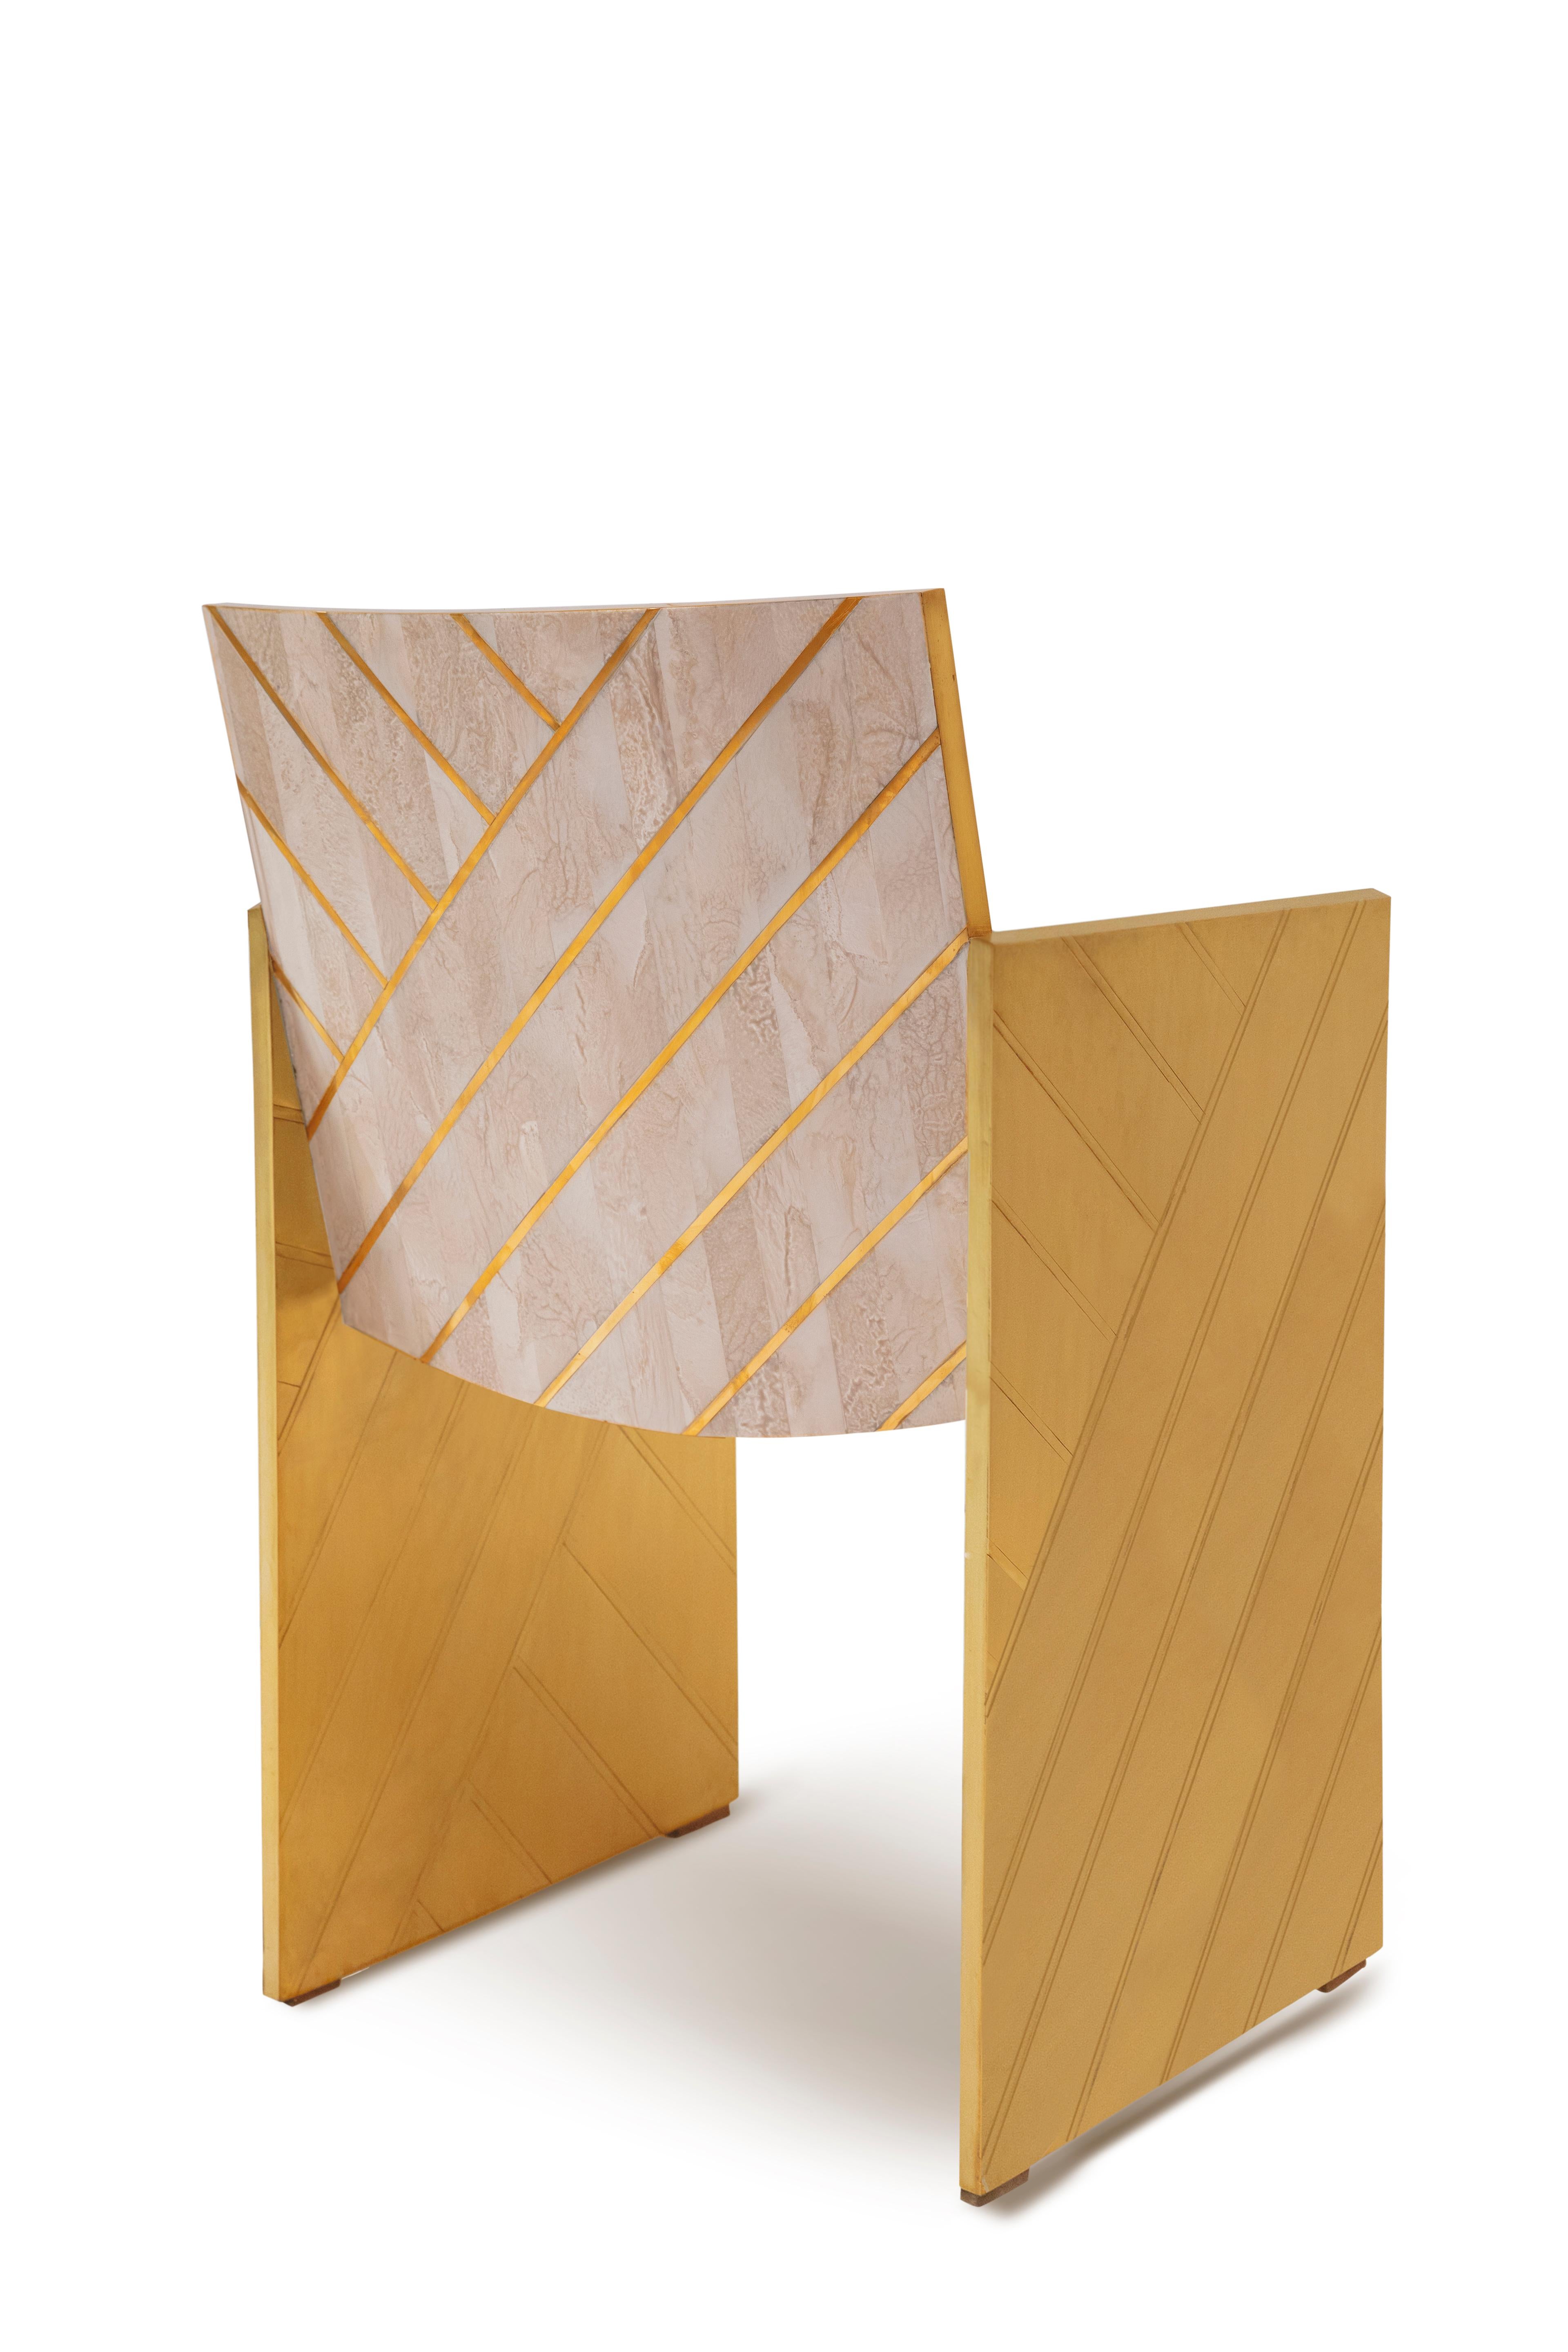 Nesso Beige and Pink Dining Chair with Brass Inlay von Matteo Cibic ist ein schöner Stuhl aus perlmuttfarbenem Harz mit geometrischer Messingintarsie. Er kann wunderbar mit dem Nesso Esstisch kombiniert werden. Er ist in drei Farben erhältlich -